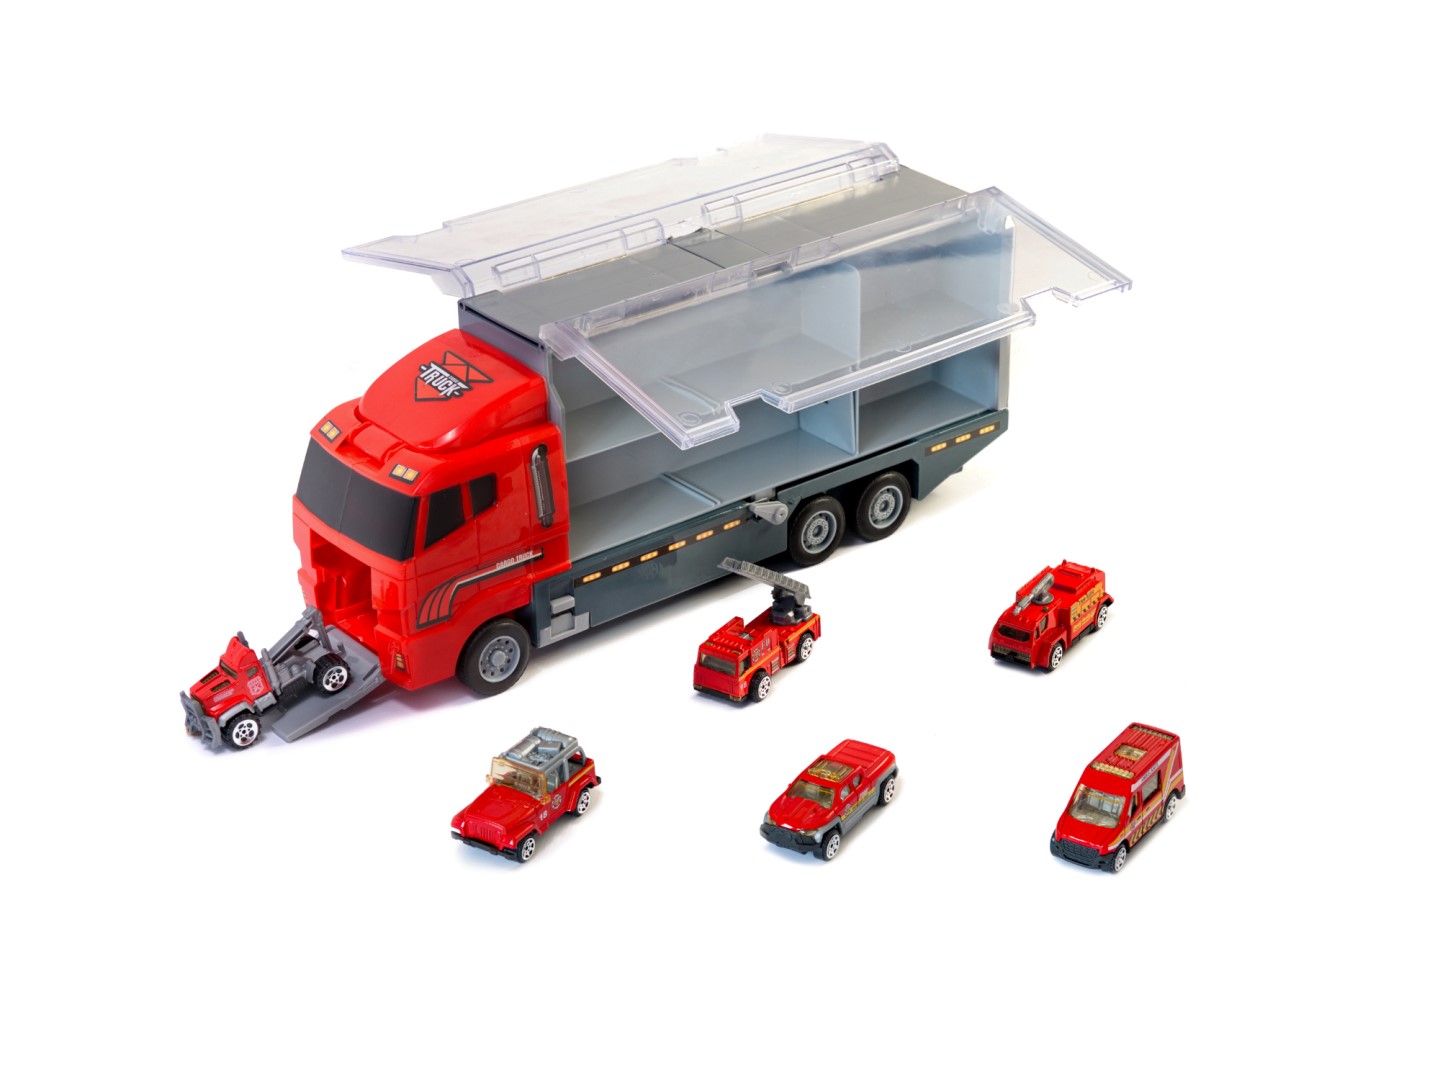 Set de Masinute, Tir Truck, Camion cu 6 Masini de Pompieri, 36 cm Lungime, cu Panou Transparent, Iesire Speciala pentru Masini, Aspect Realist, Red